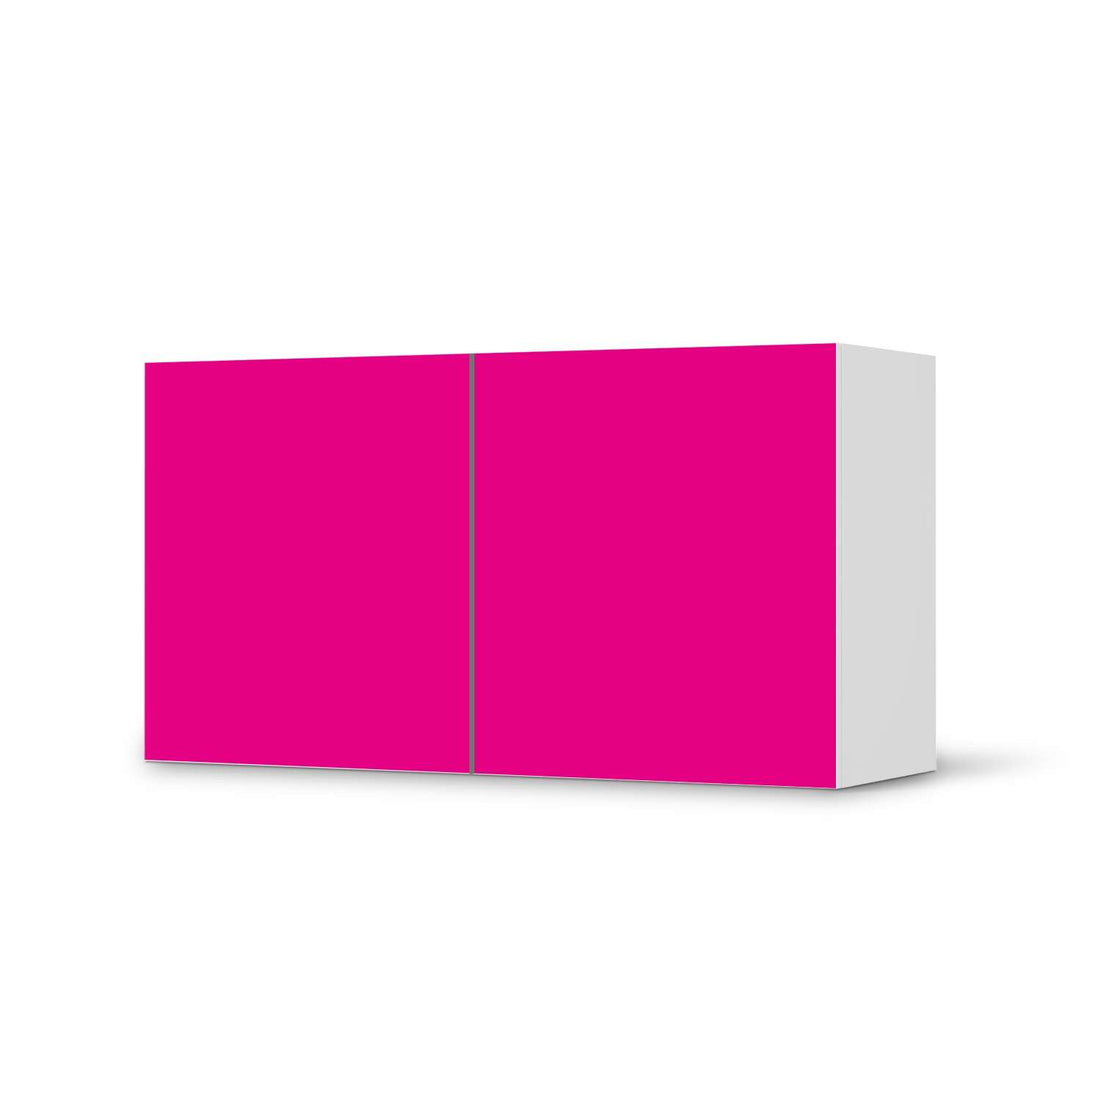 Folie für Möbel Pink Dark - IKEA Besta Regal Quer 2 Türen  - weiss